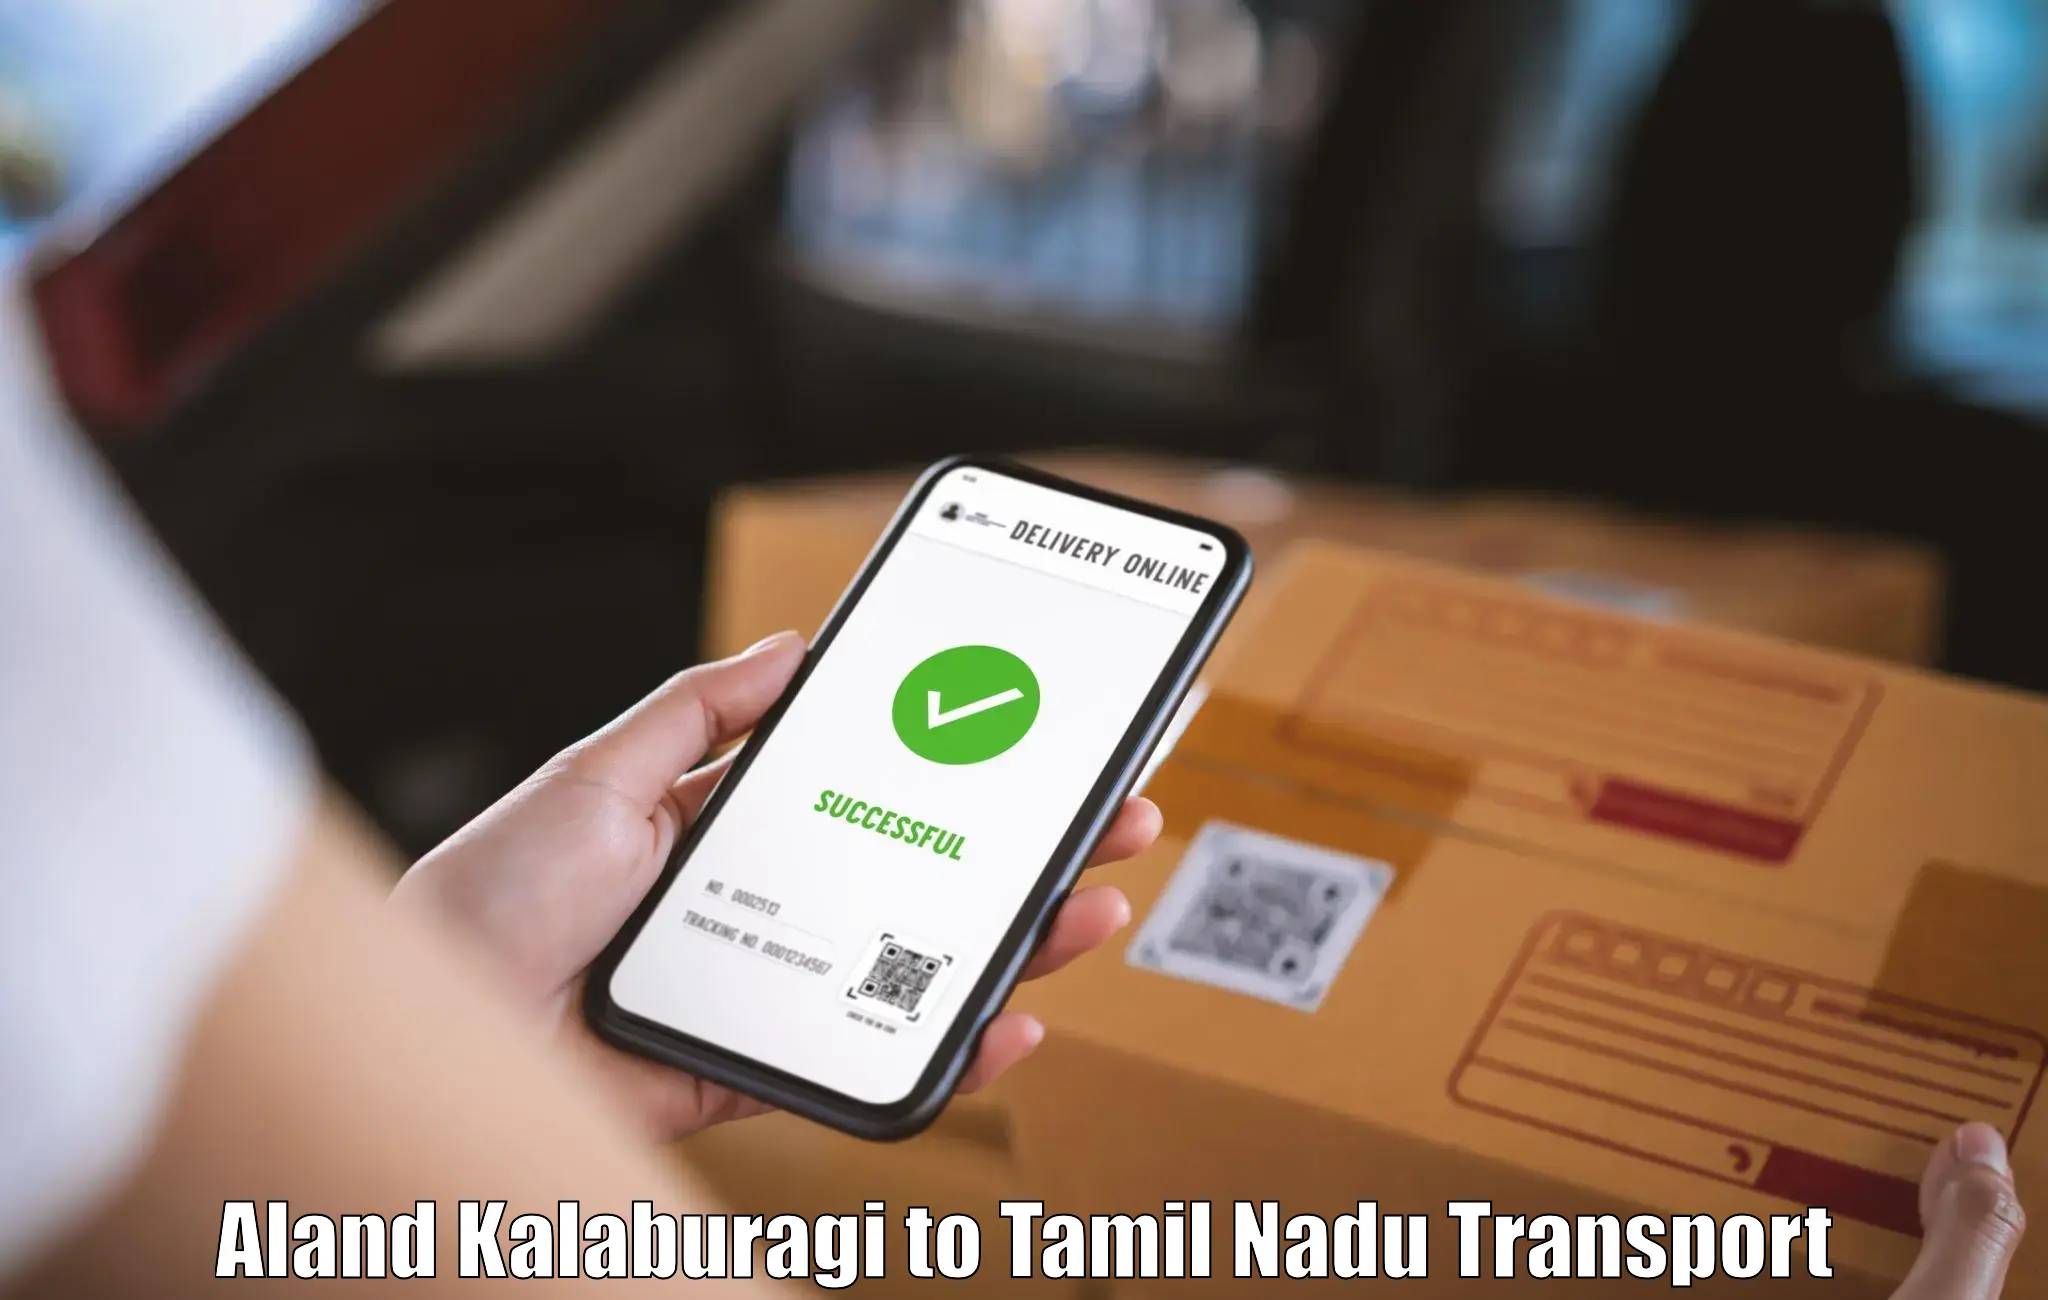 Transportation solution services Aland Kalaburagi to Villupuram